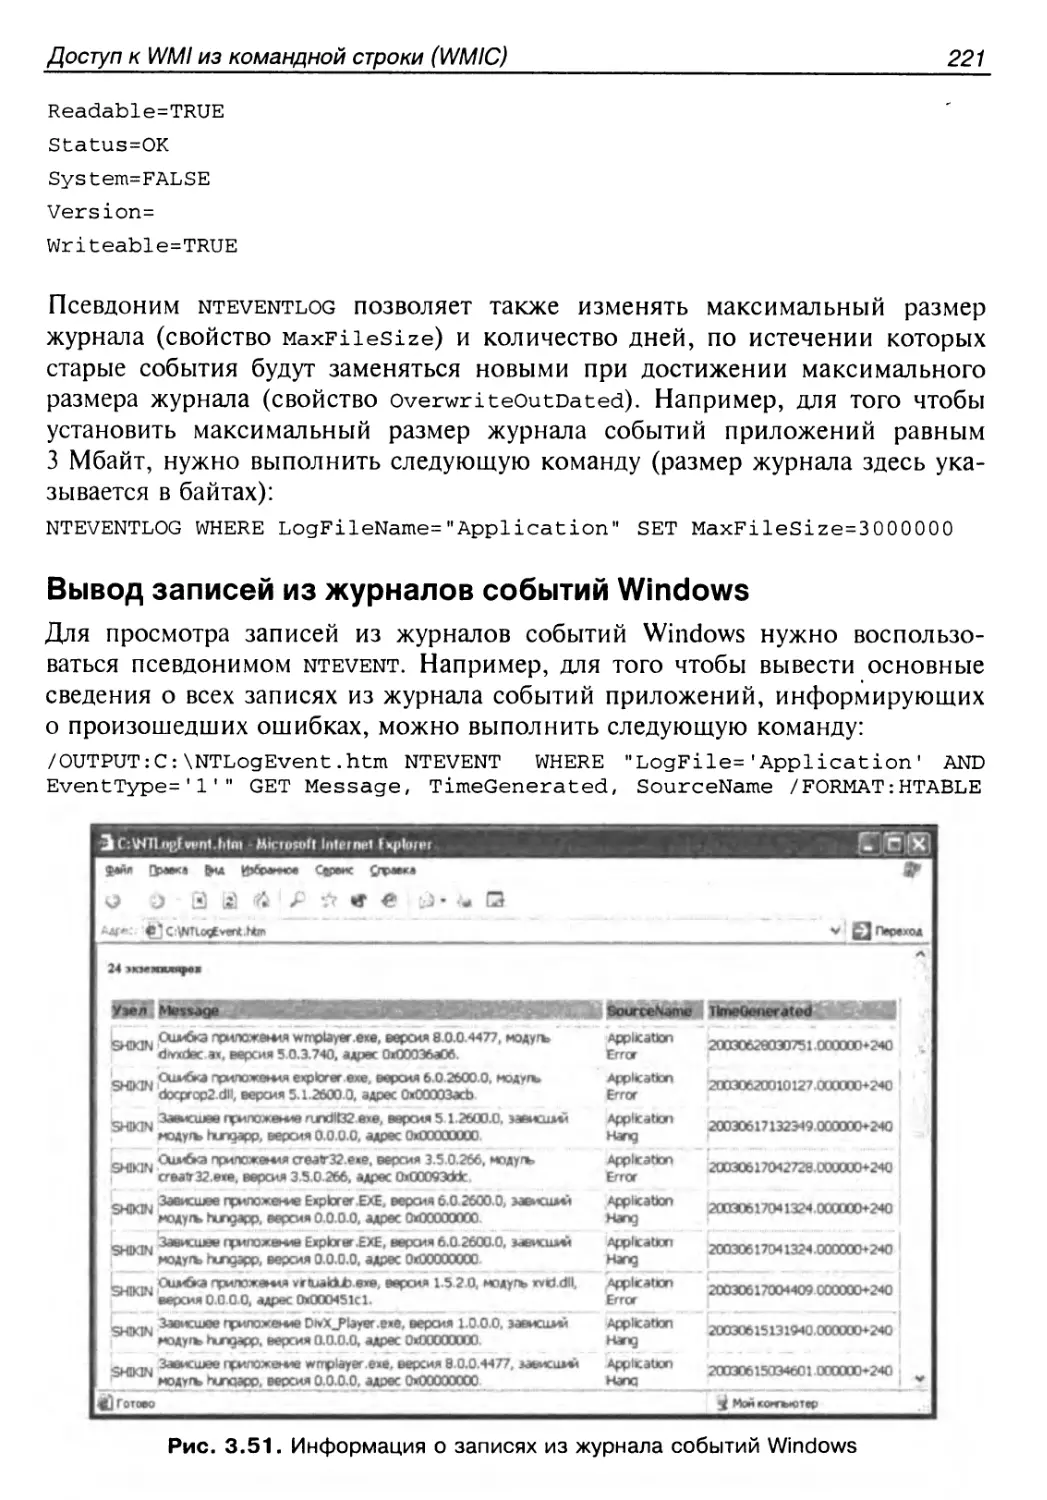 Вывод записей из журналов событий Windows